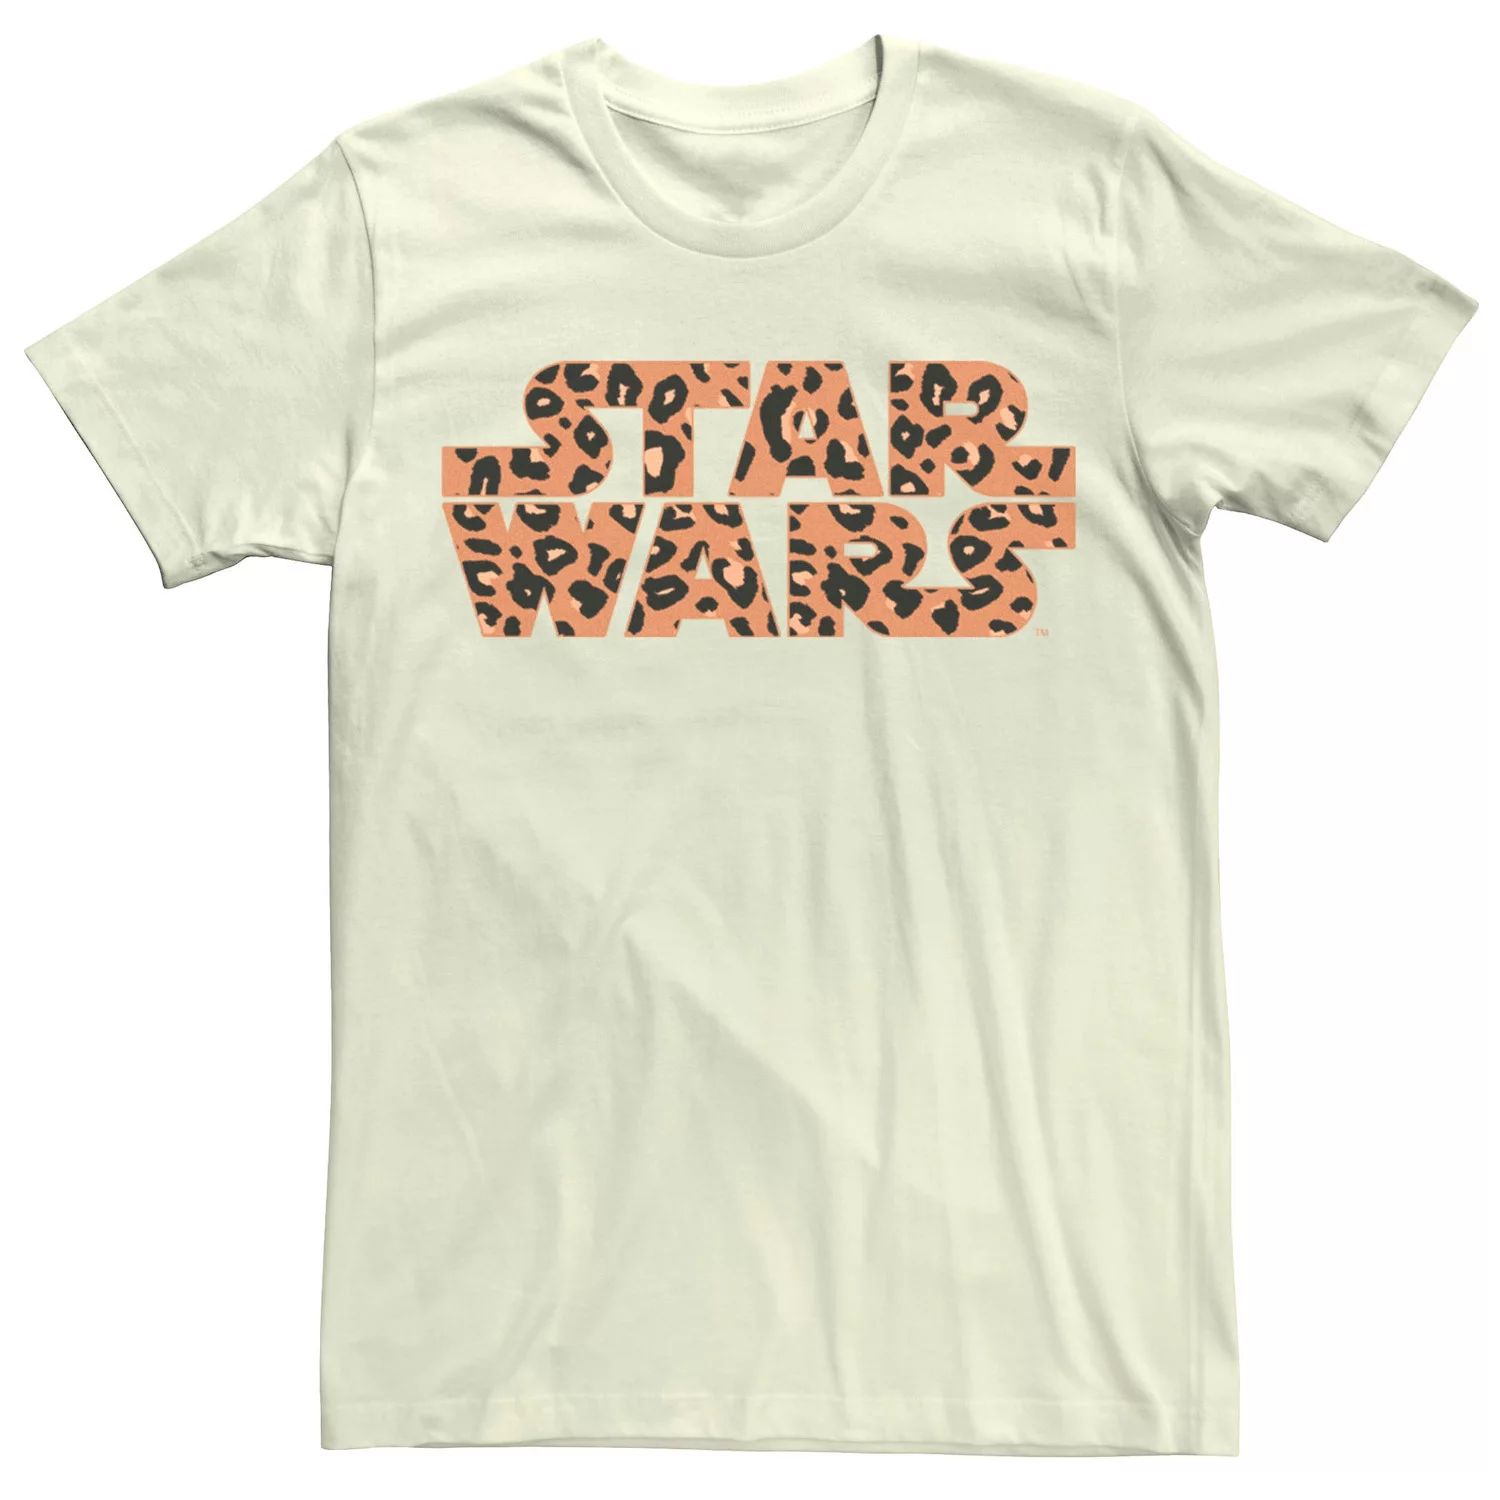 Мужская базовая футболка с логотипом и принтом гепарда Star Wars